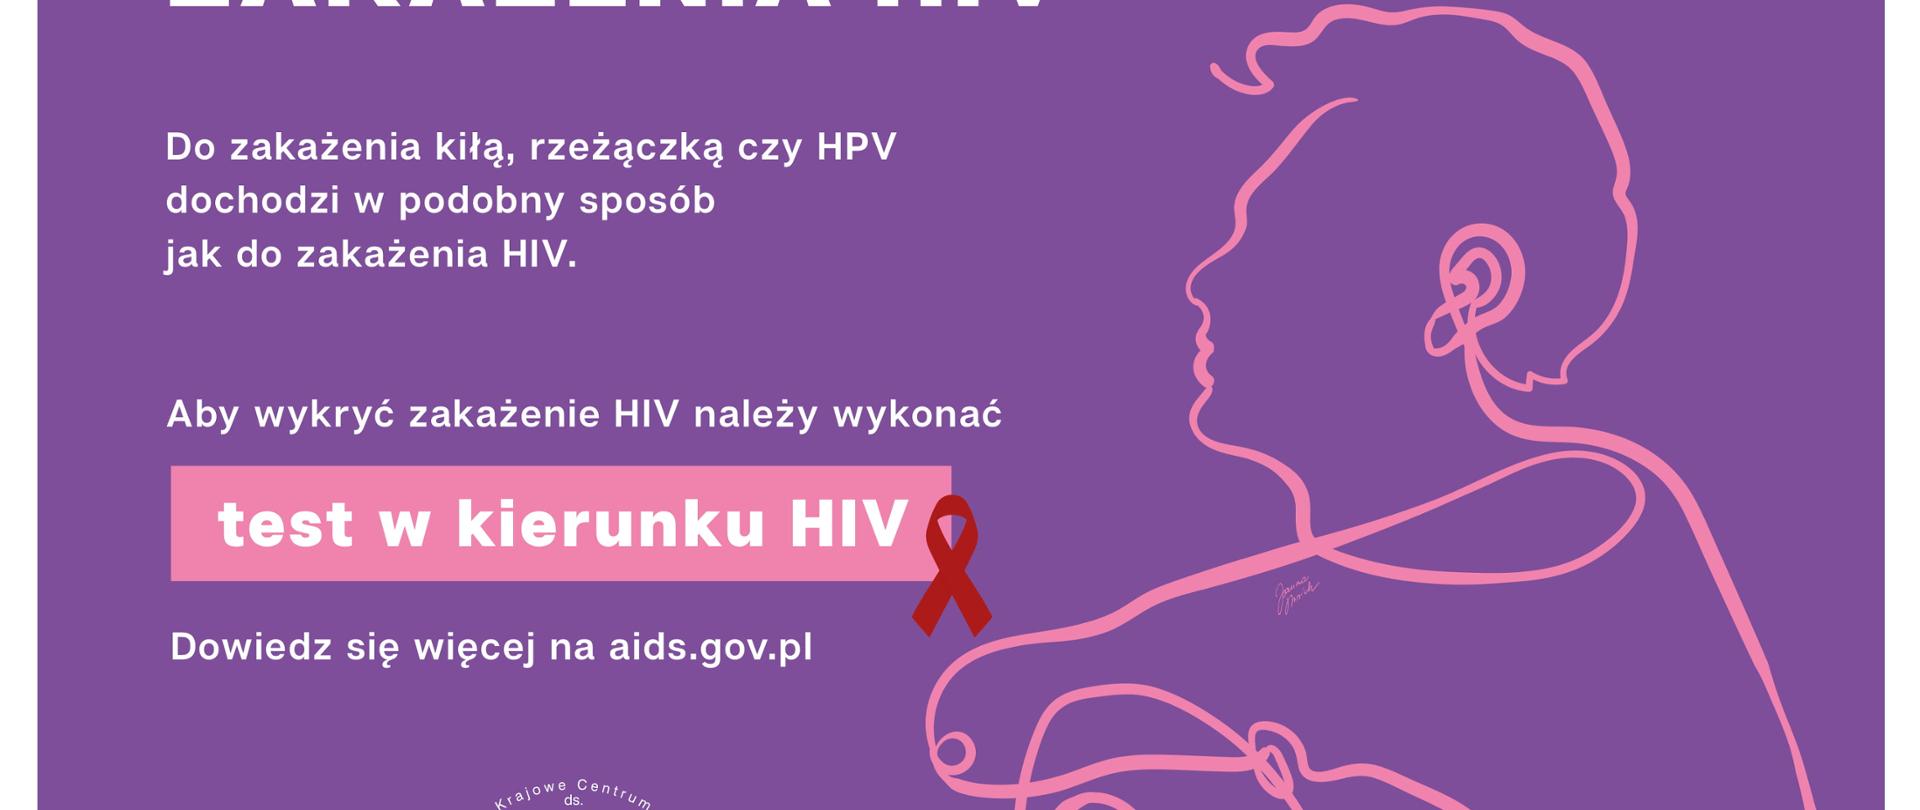 Zakażenia przenoszone drogą płciową zwiększają ryzyko zakażenia HIV, osoba siedzi, dwa loga